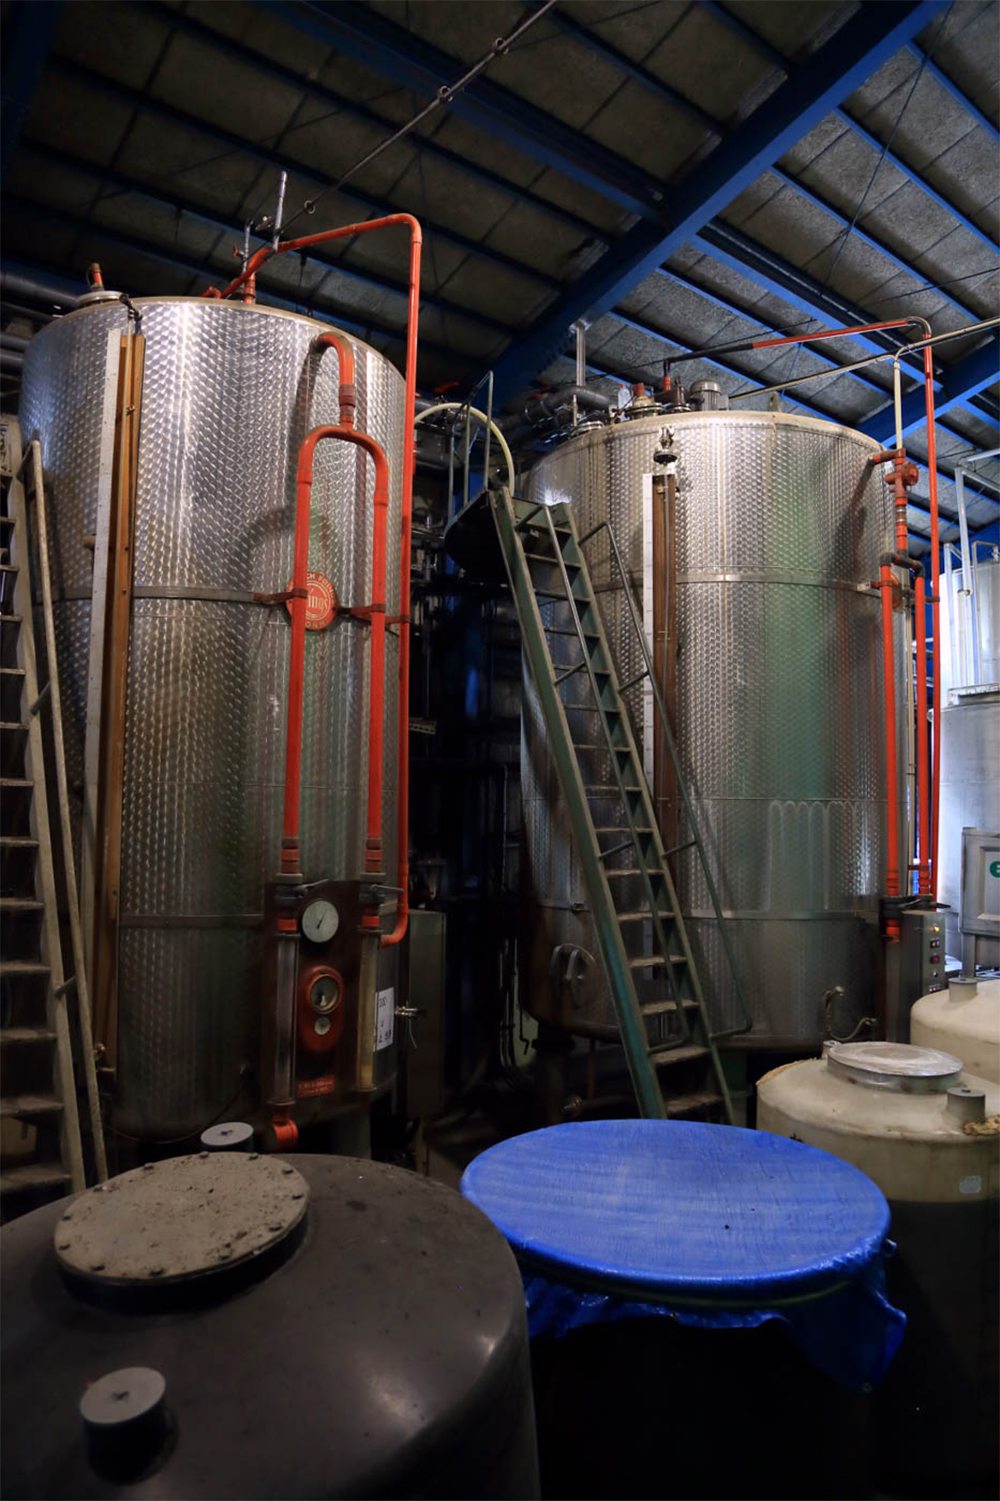 ドイツ生まれの製法から生まれる爽やかな風味。空気を送り込むことで１日で酢が出来る「通気発酵法」。